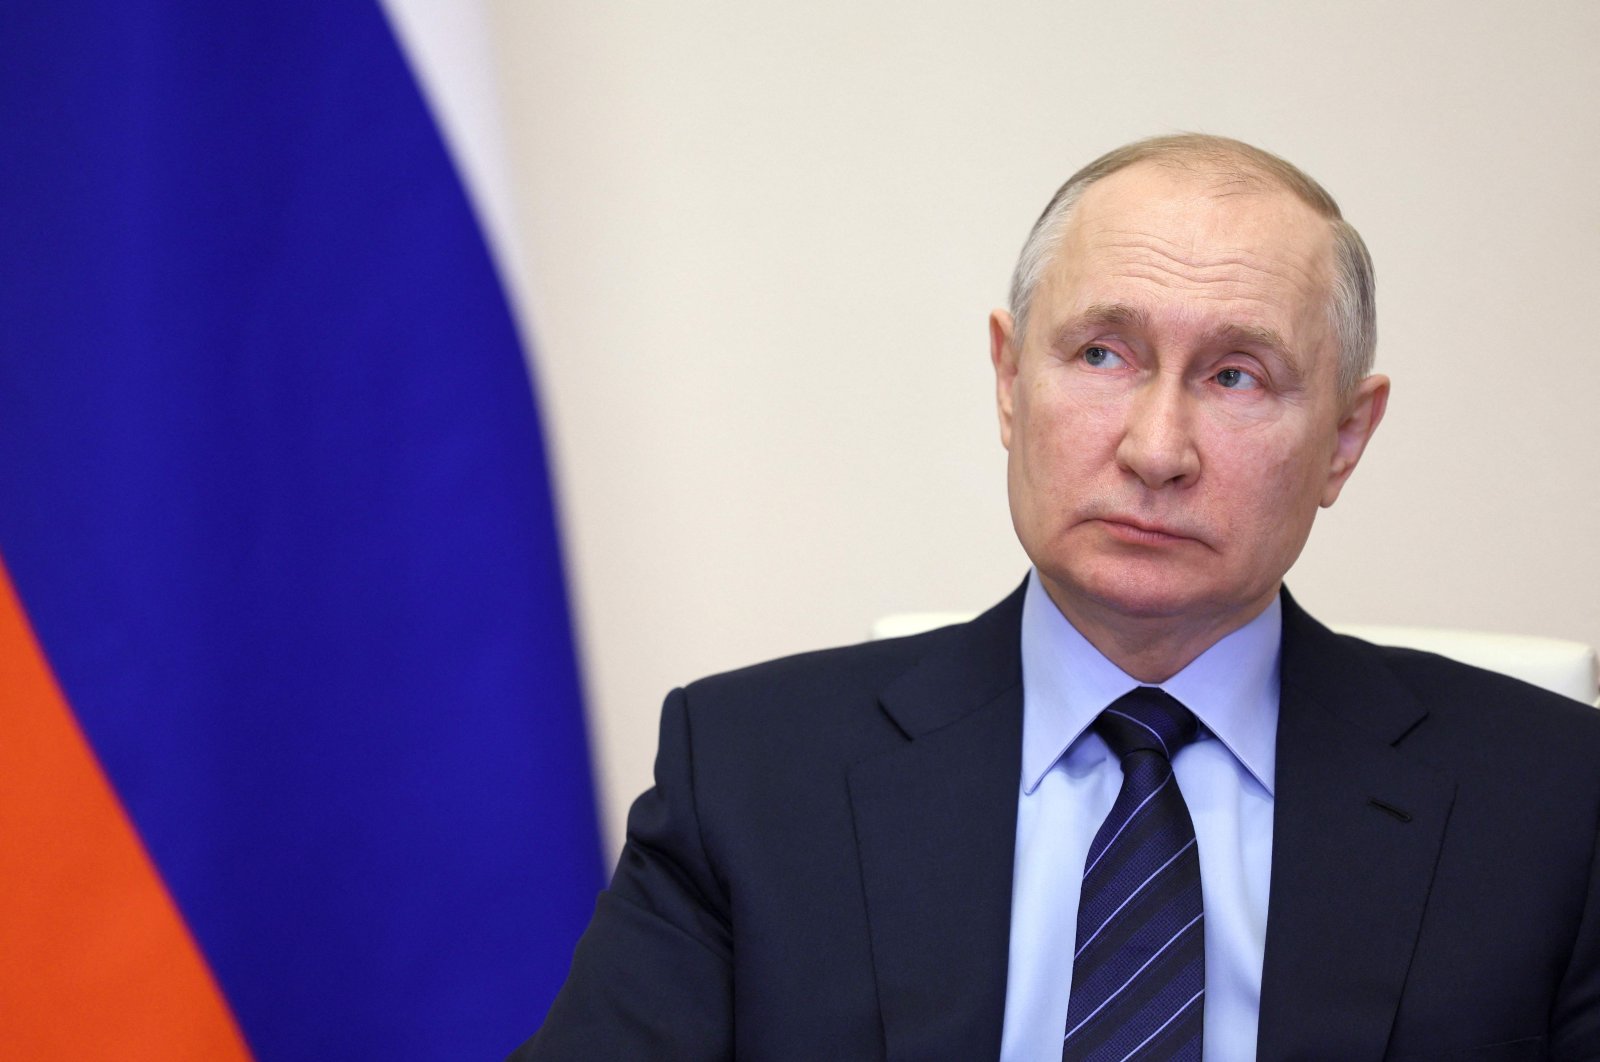 Rusia mengambil alih aset 2 perusahaan asing setelah keputusan Putin